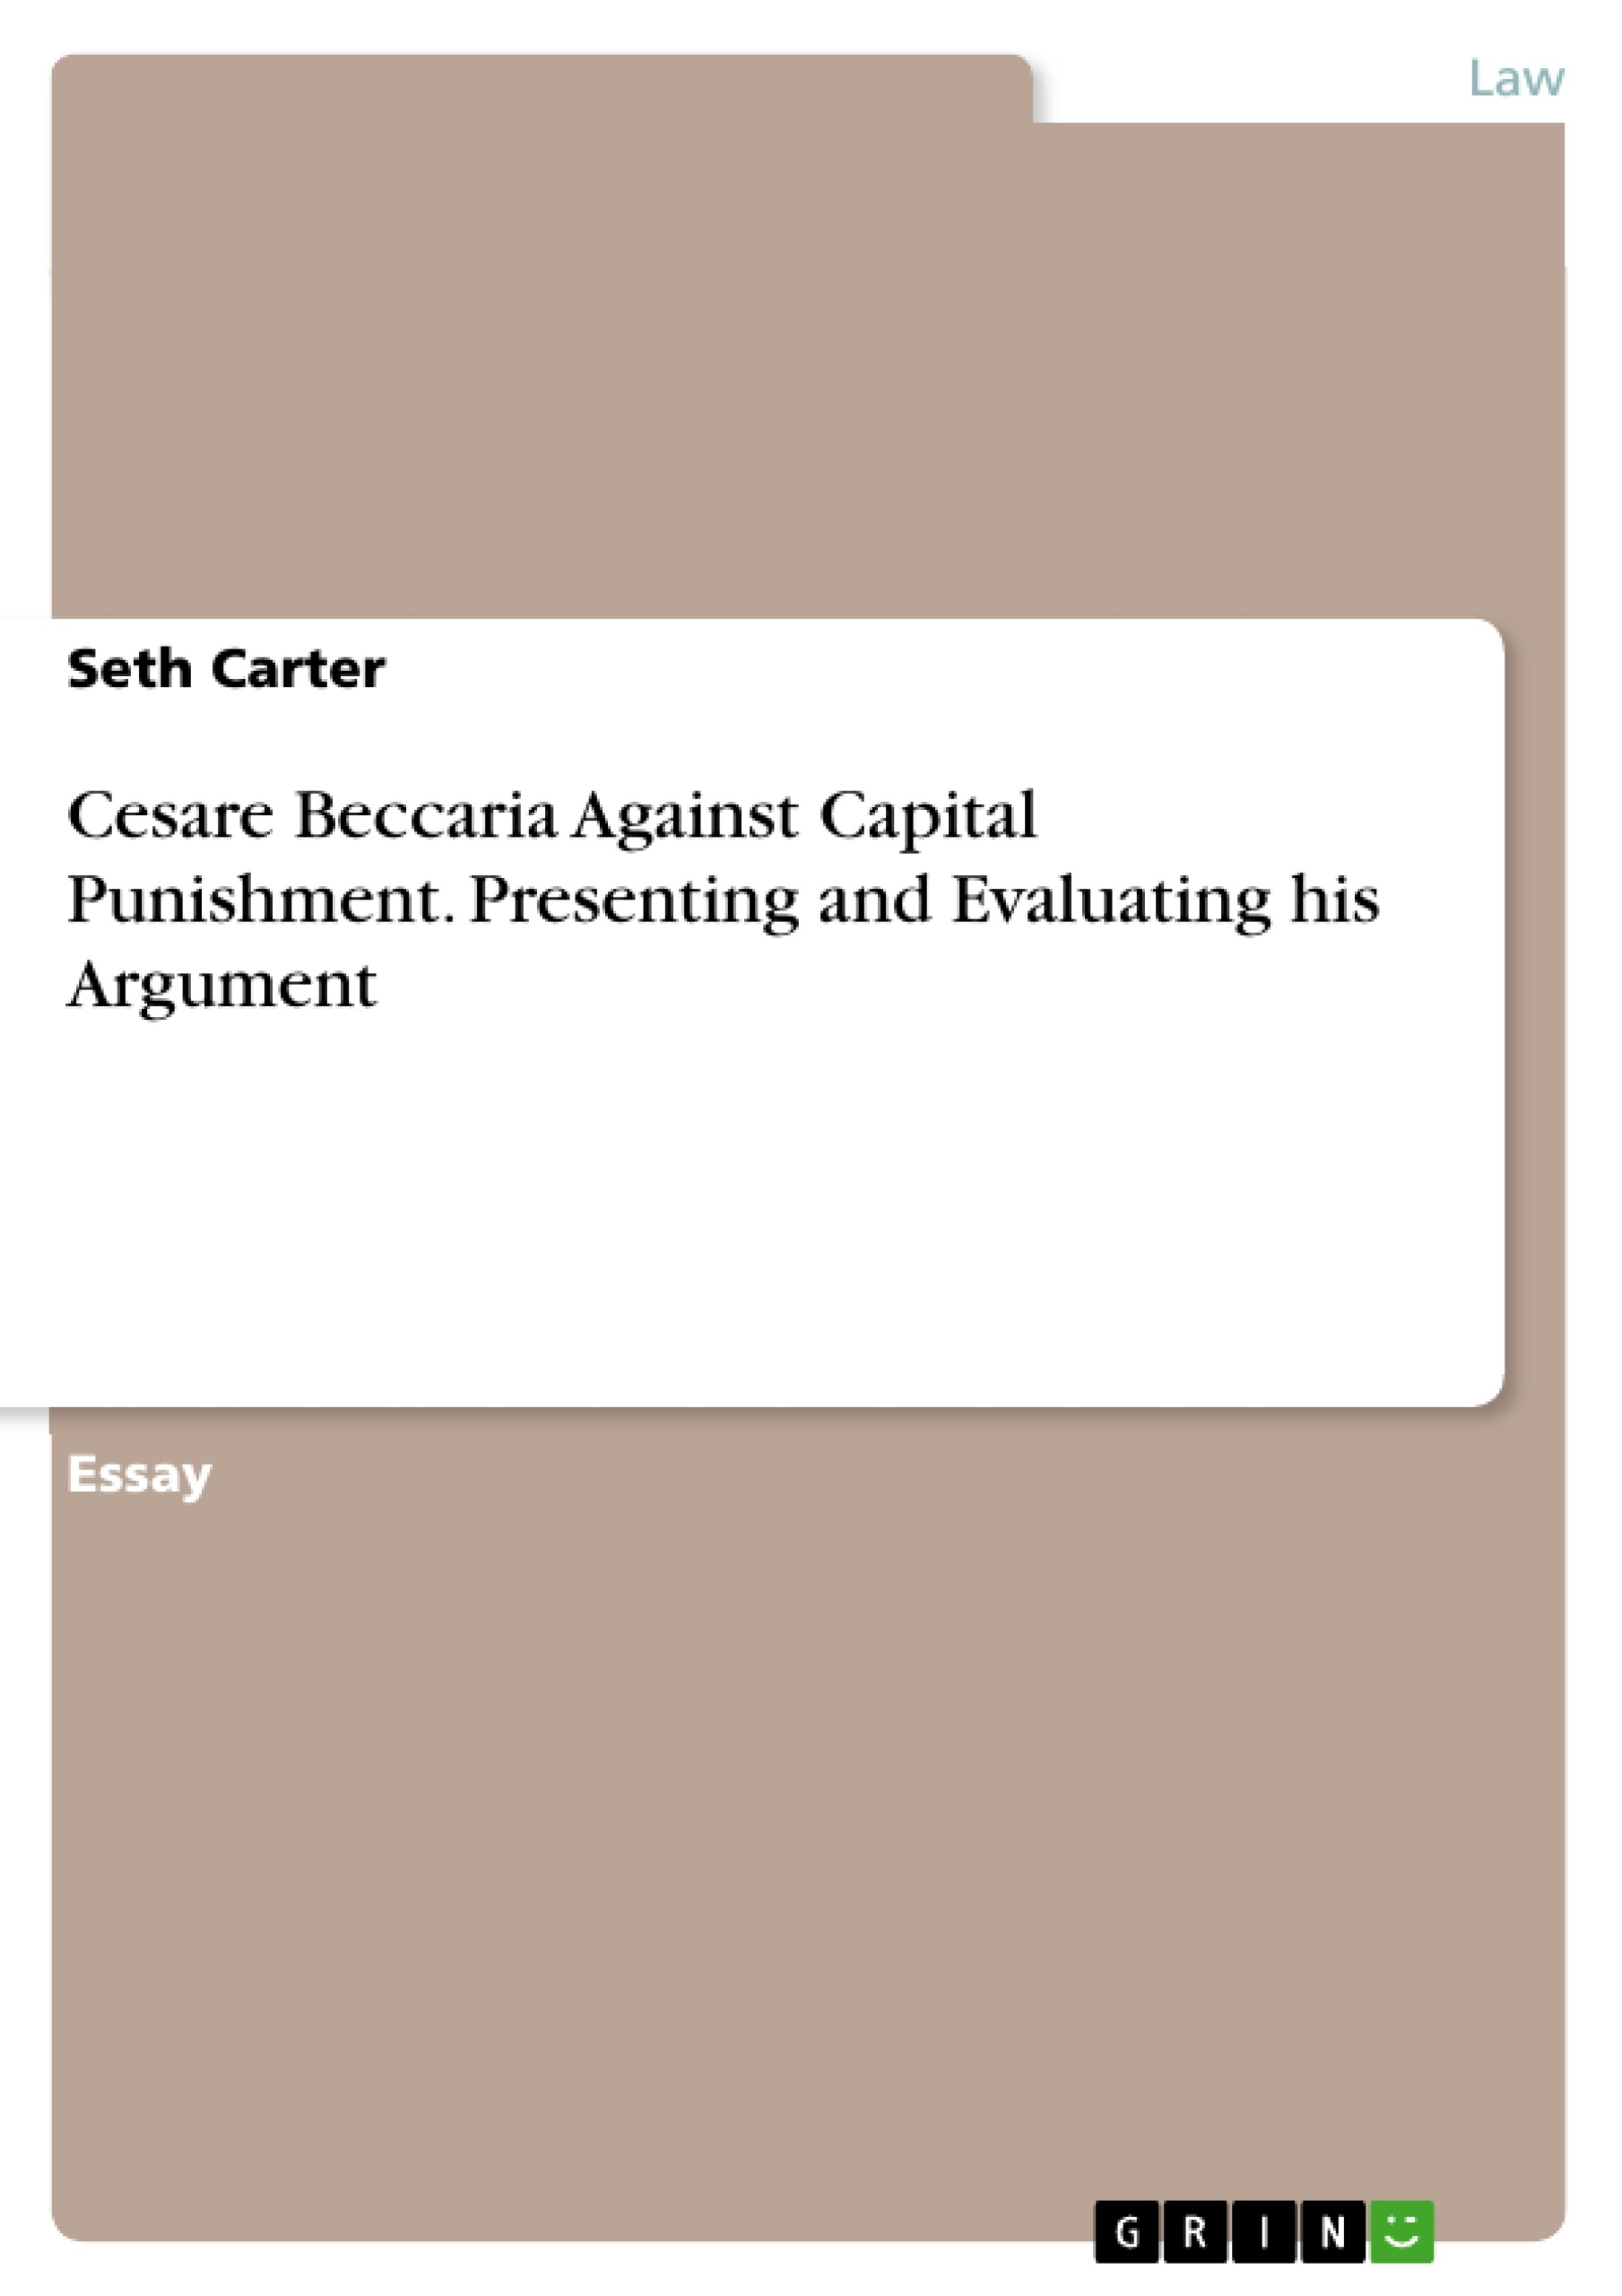 capital punishment arguments against essay